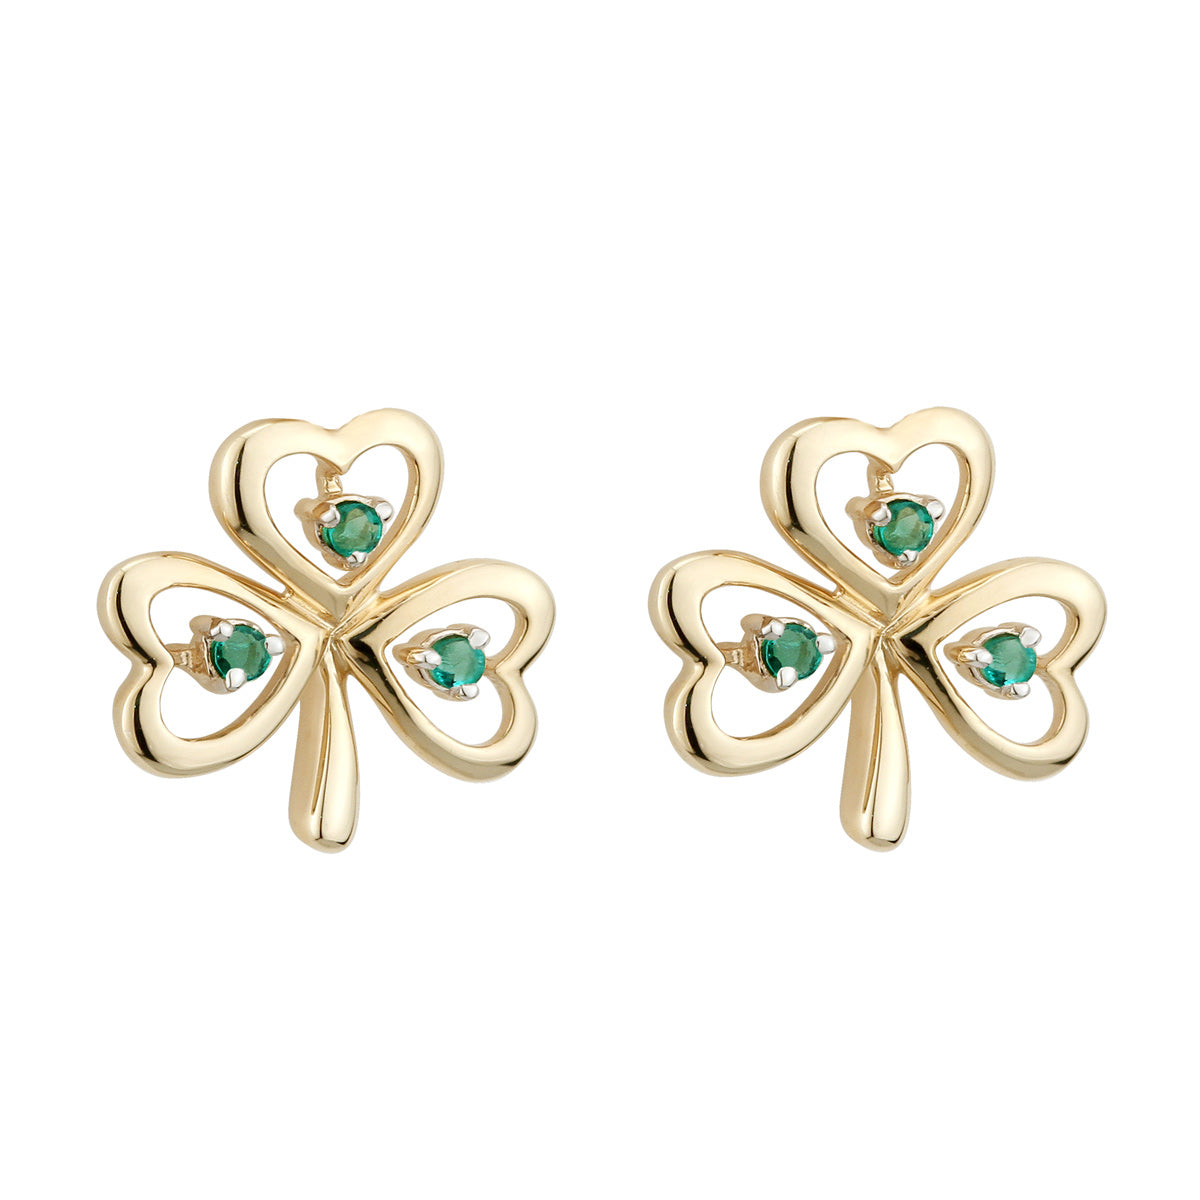 14K gold emerald shamrock earrings s33484 from Solvar